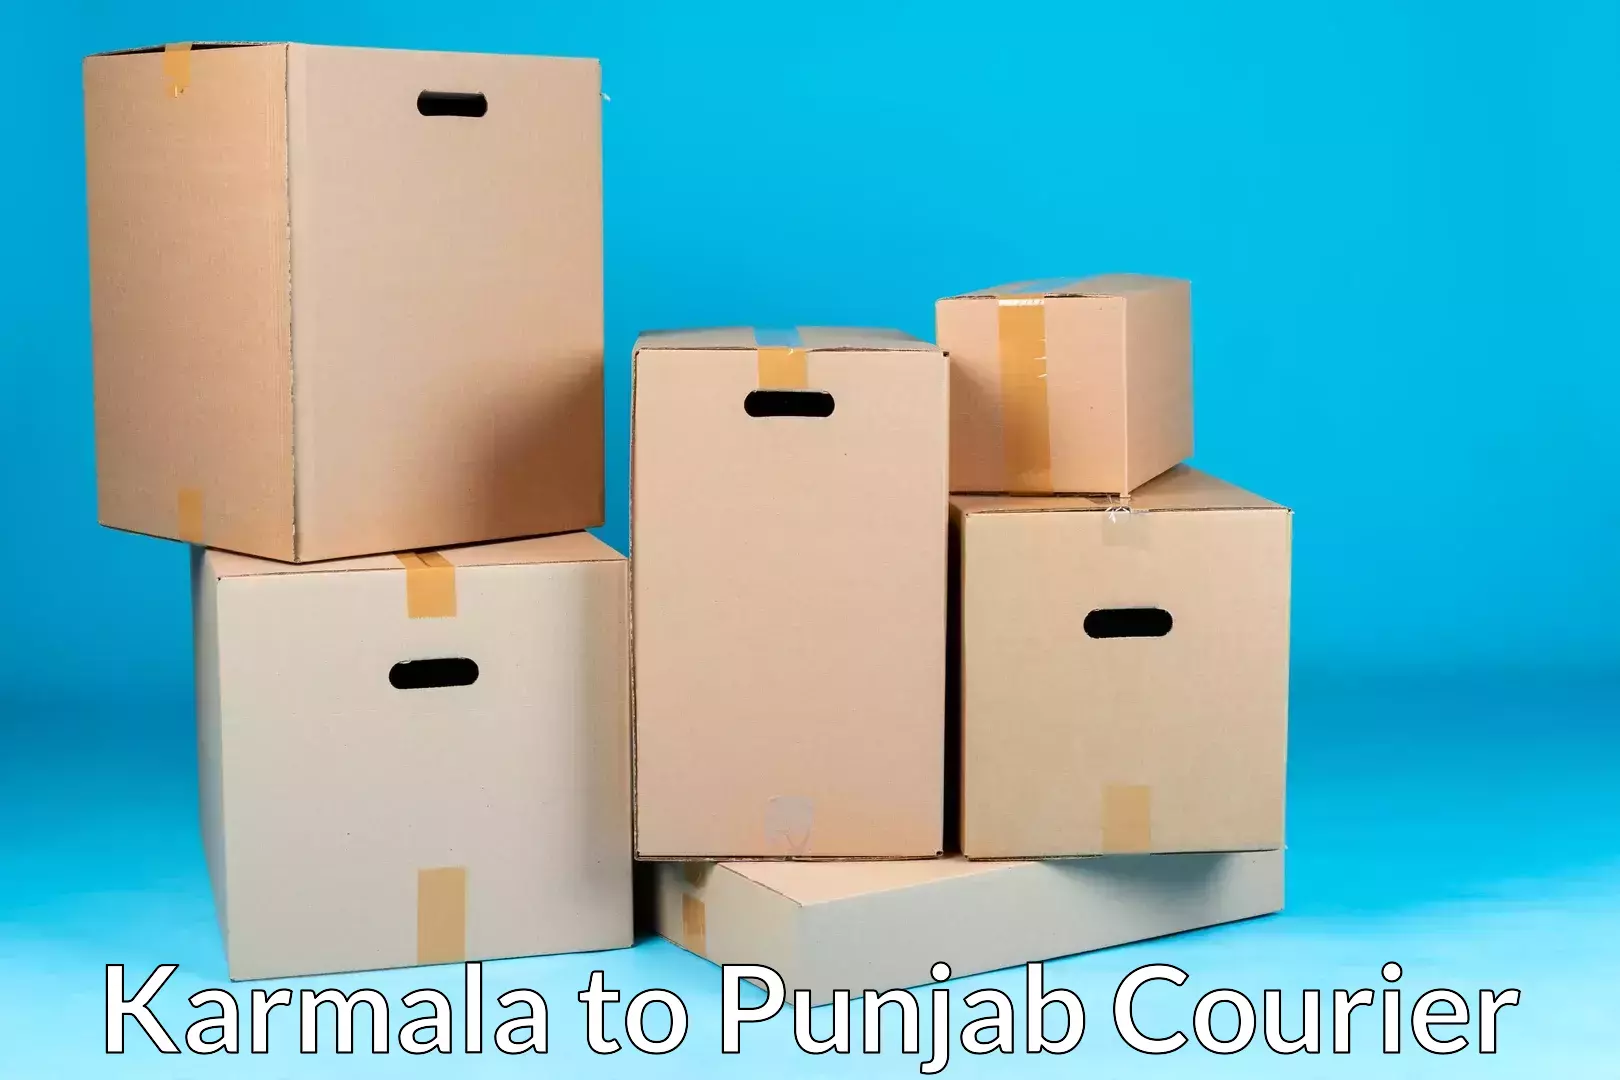 Efficient moving strategies Karmala to Punjab